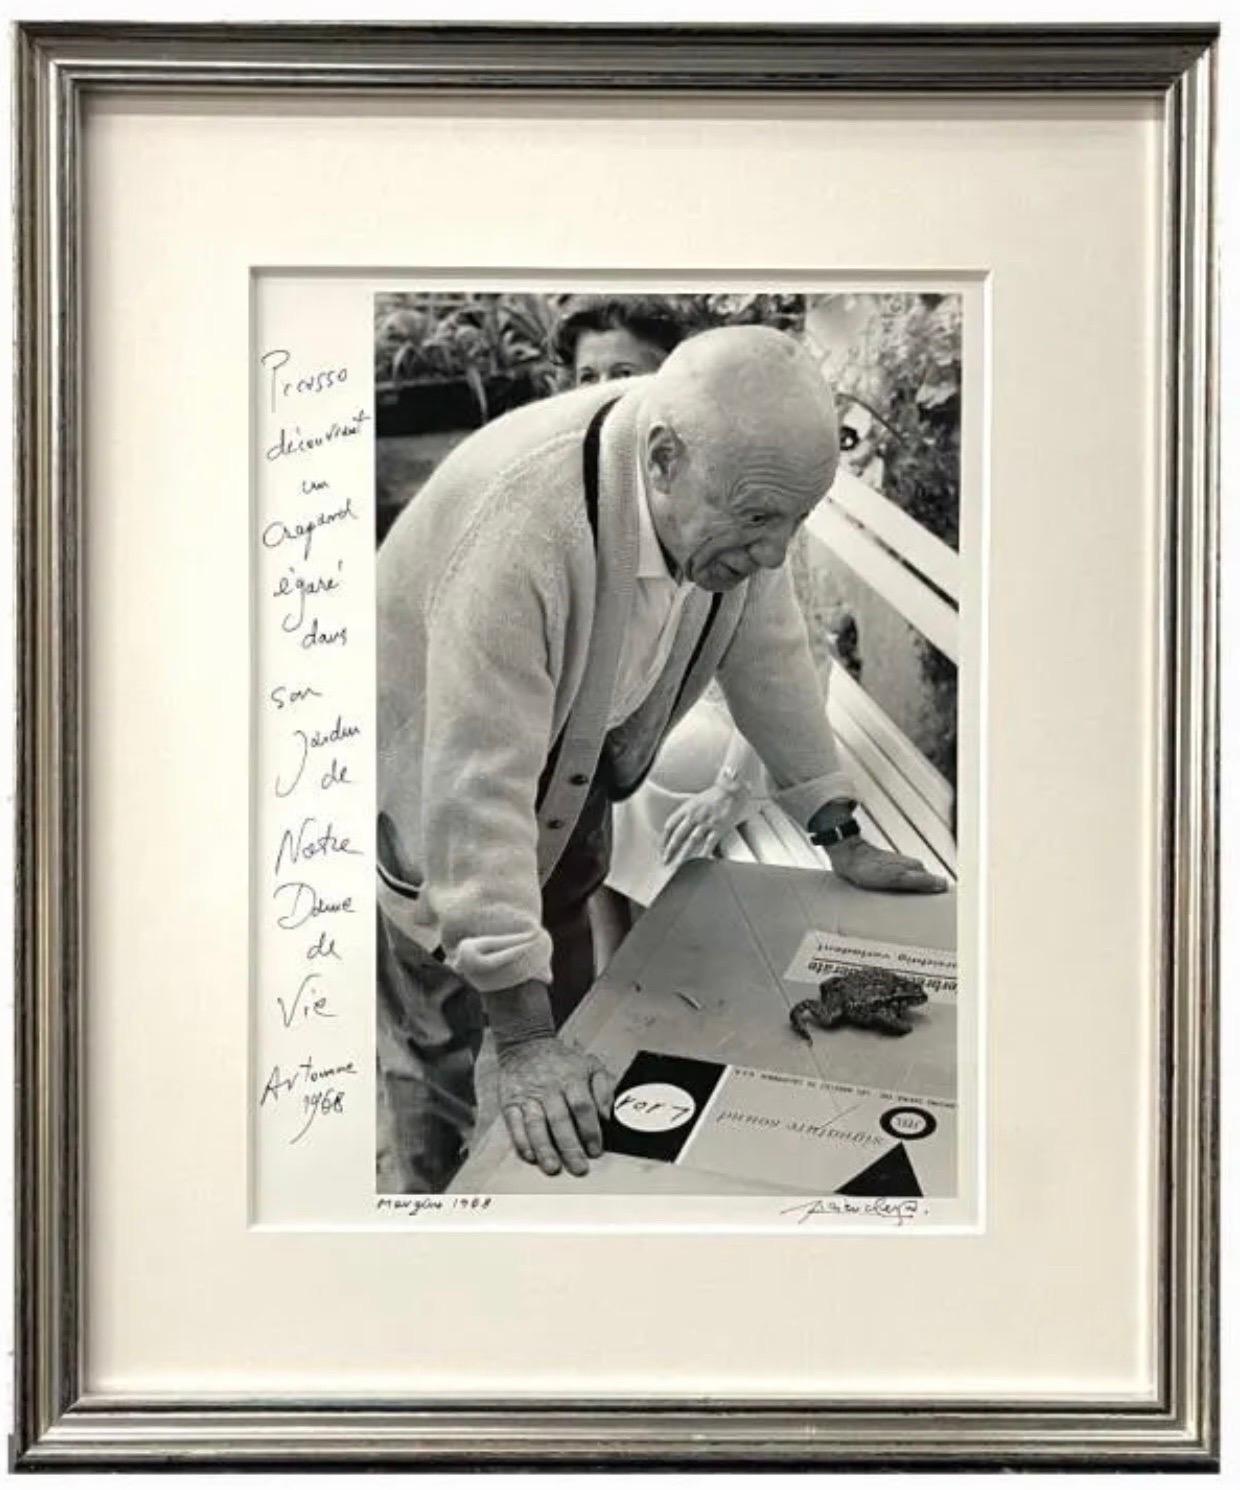 Lucien Clergue (FRANZÖSISCH, 1934 - 2014) 
Fotografischer Gelatinesilberdruck, der Pablo Picasso mit einem Frosch oder einer Schildkröte zeigt.
Mougins, 1968
Vom Künstler handsigniert und mit handschriftlicher Beschreibung. Betitelt und datiert